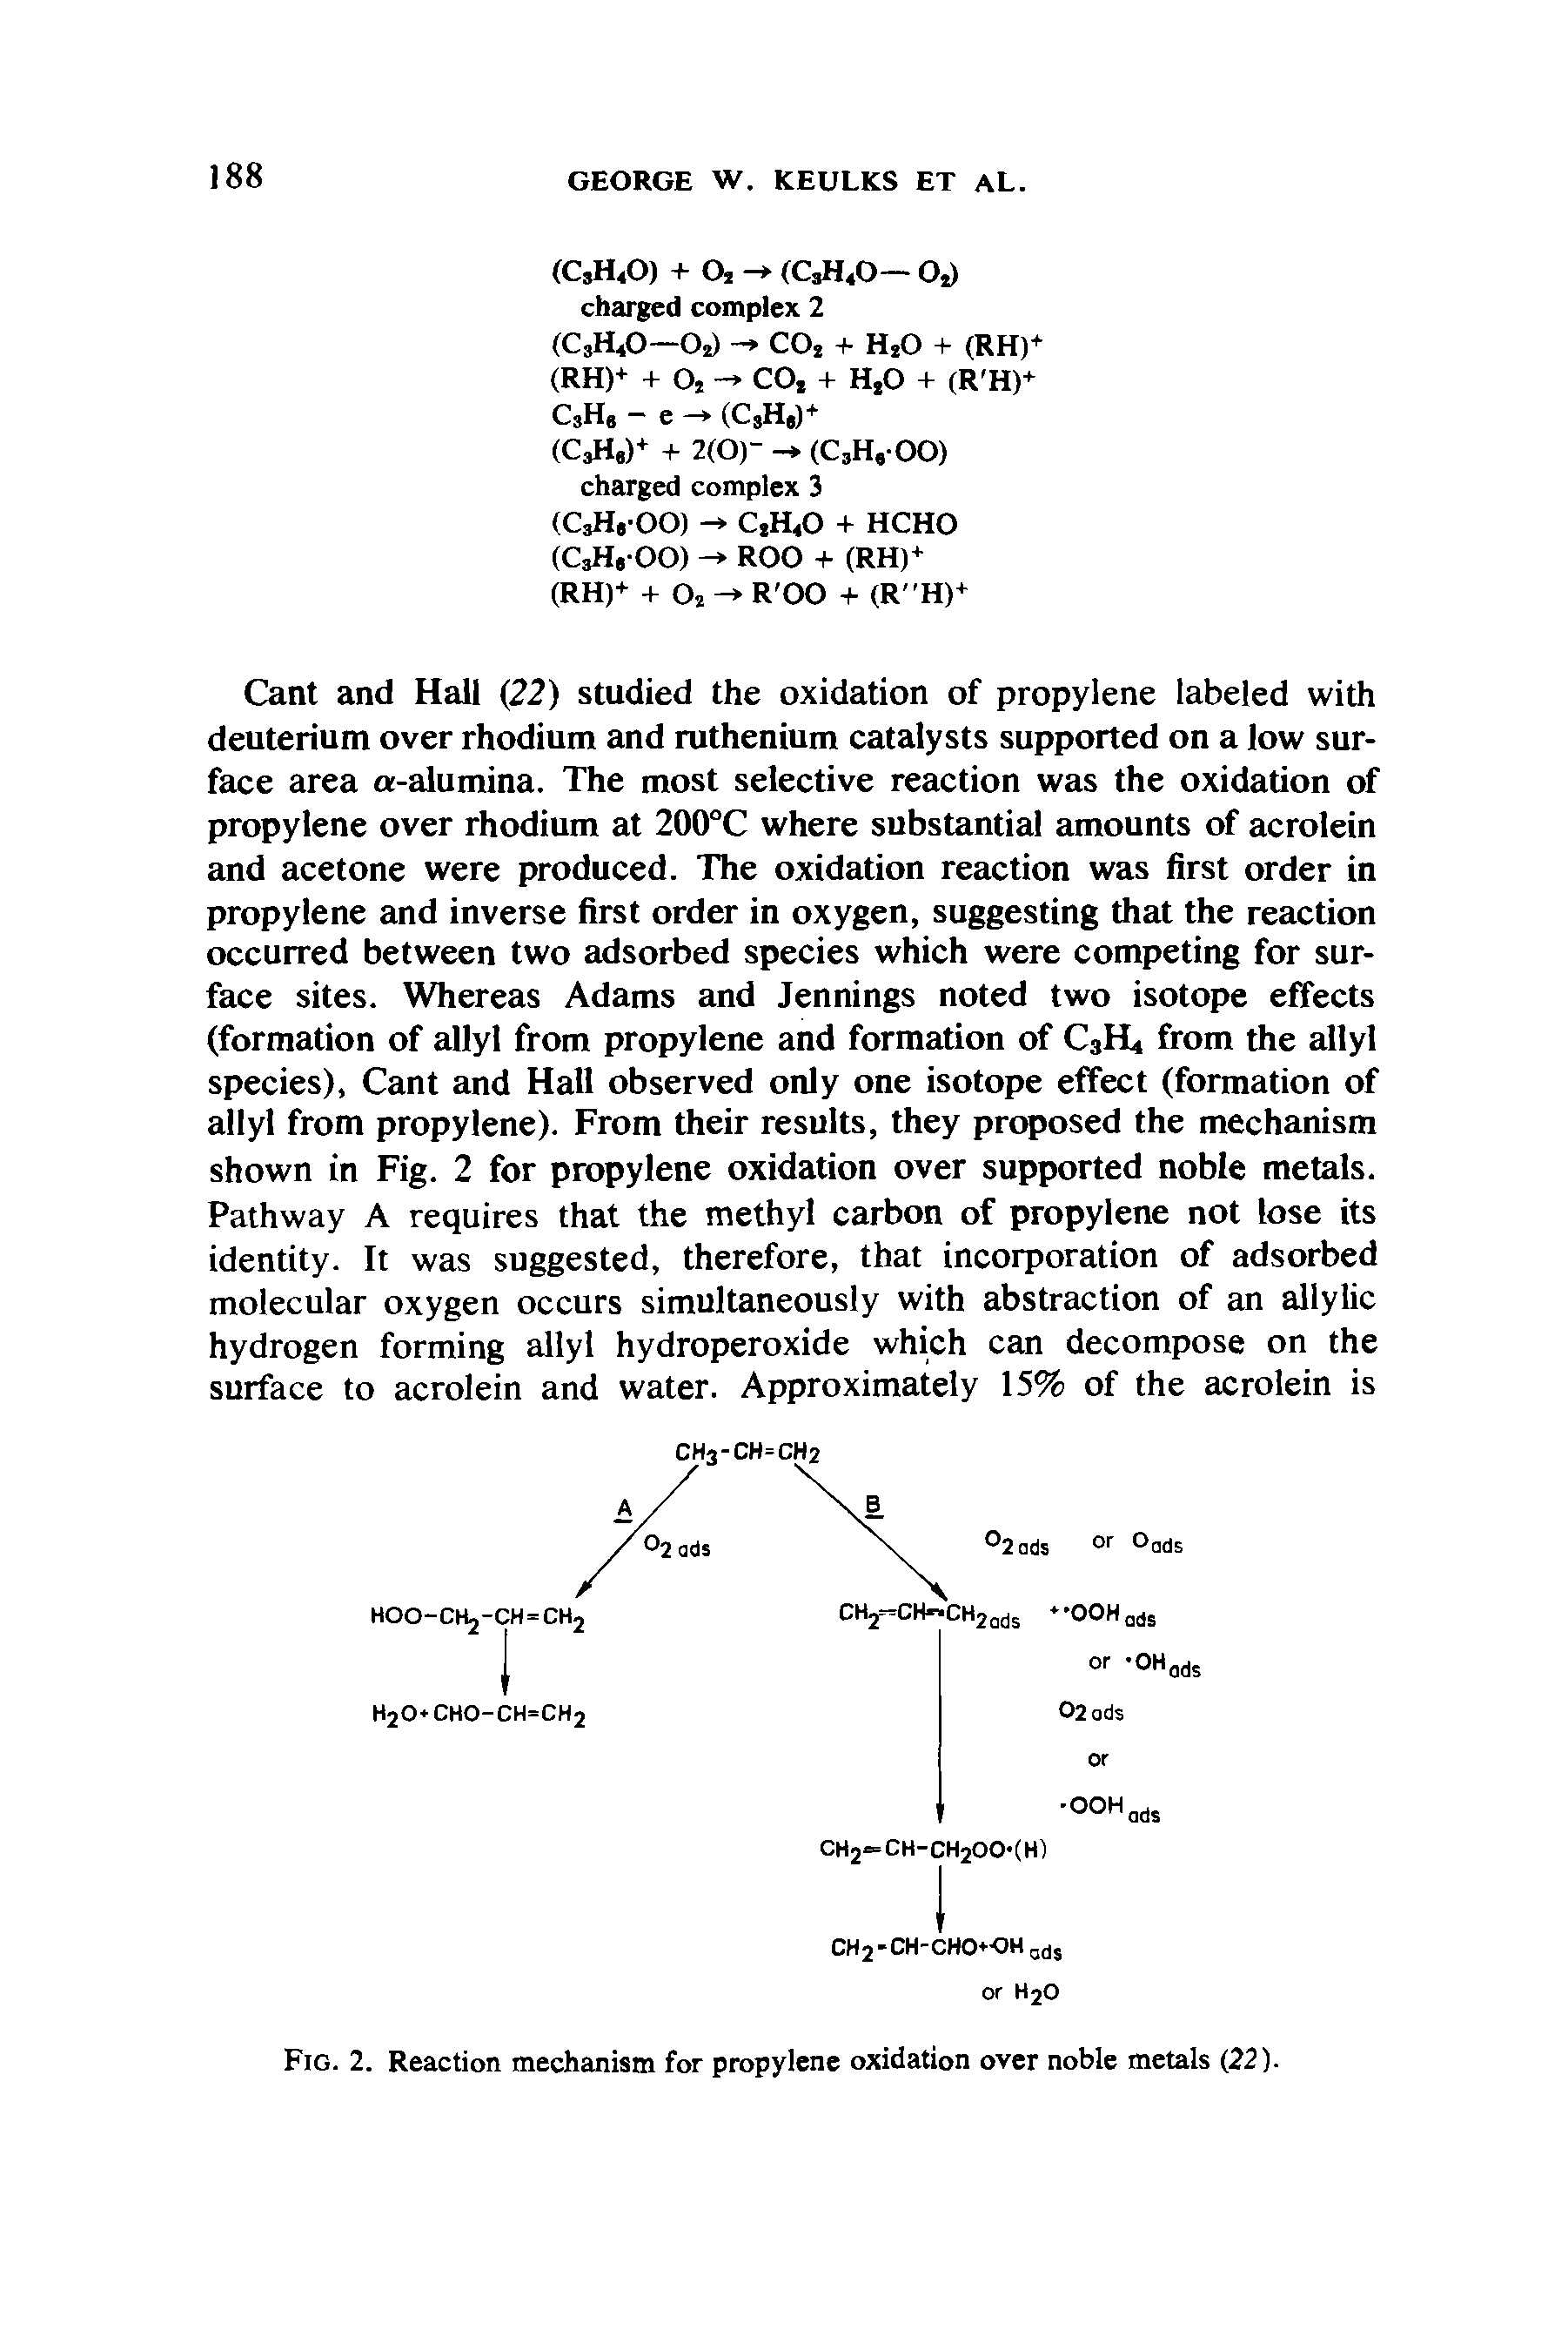 Fig. 2. Reaction mechanism for propylene oxidation over noble metals (22).